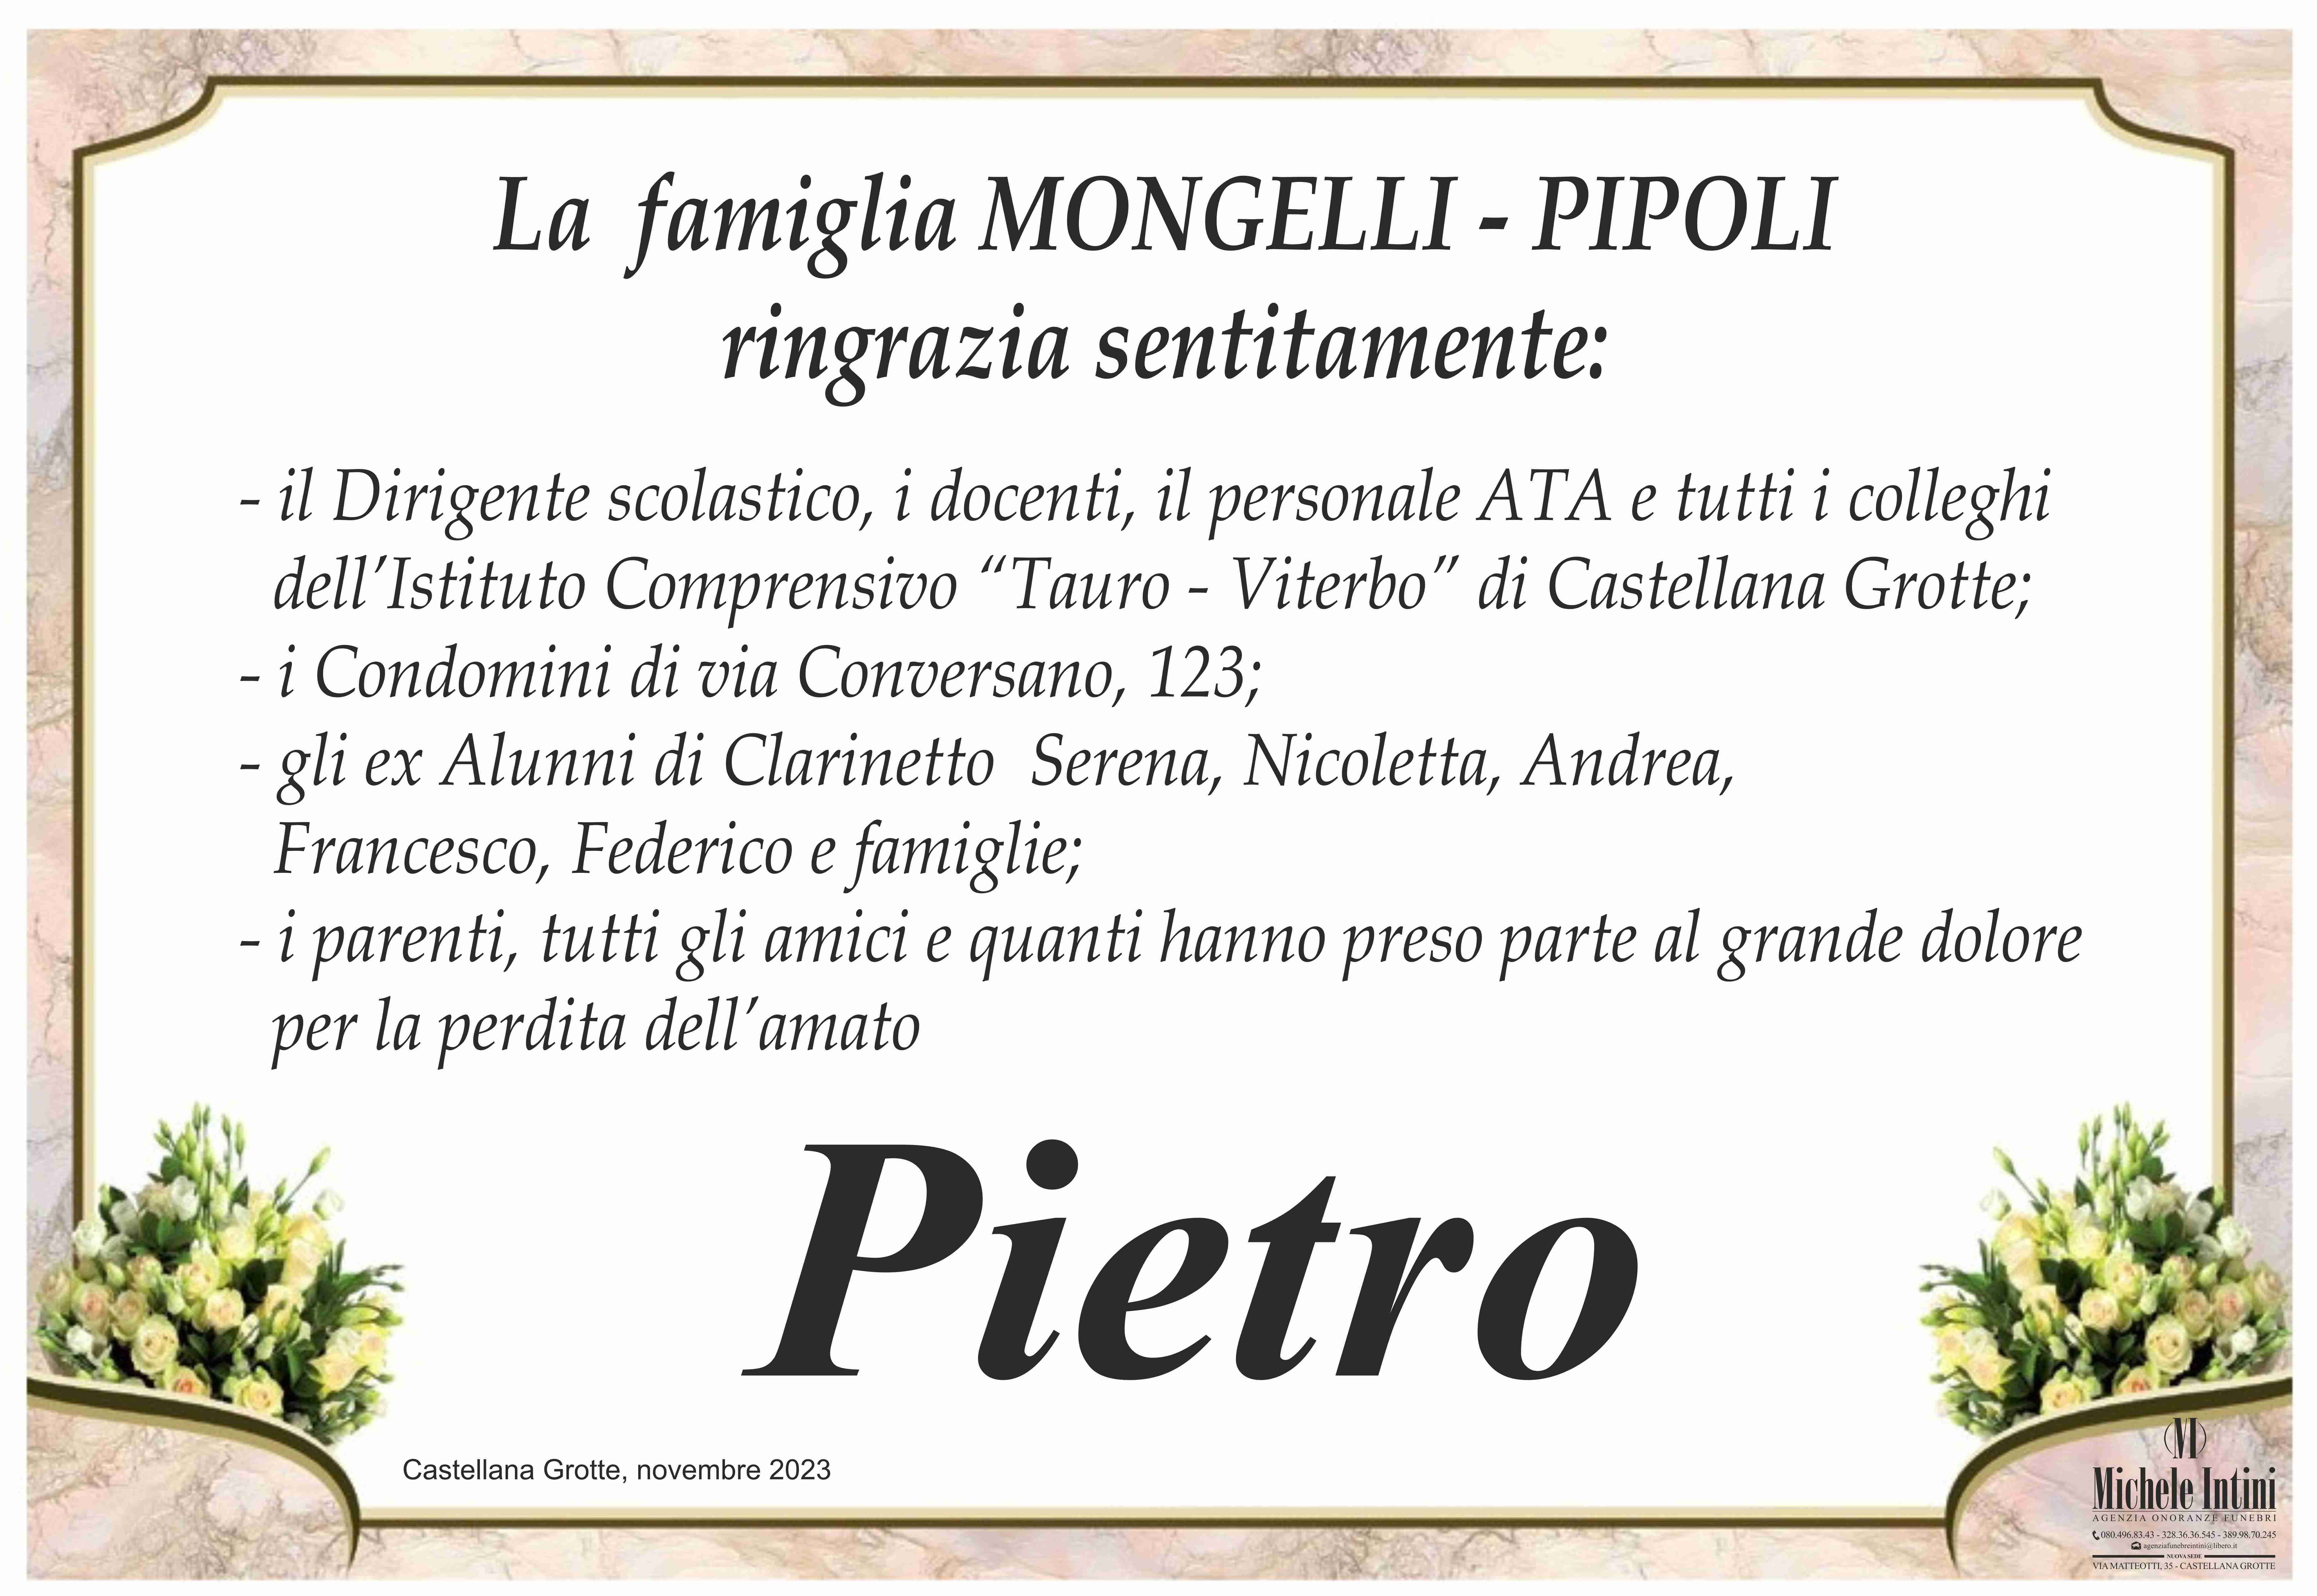 Pietro Mongelli